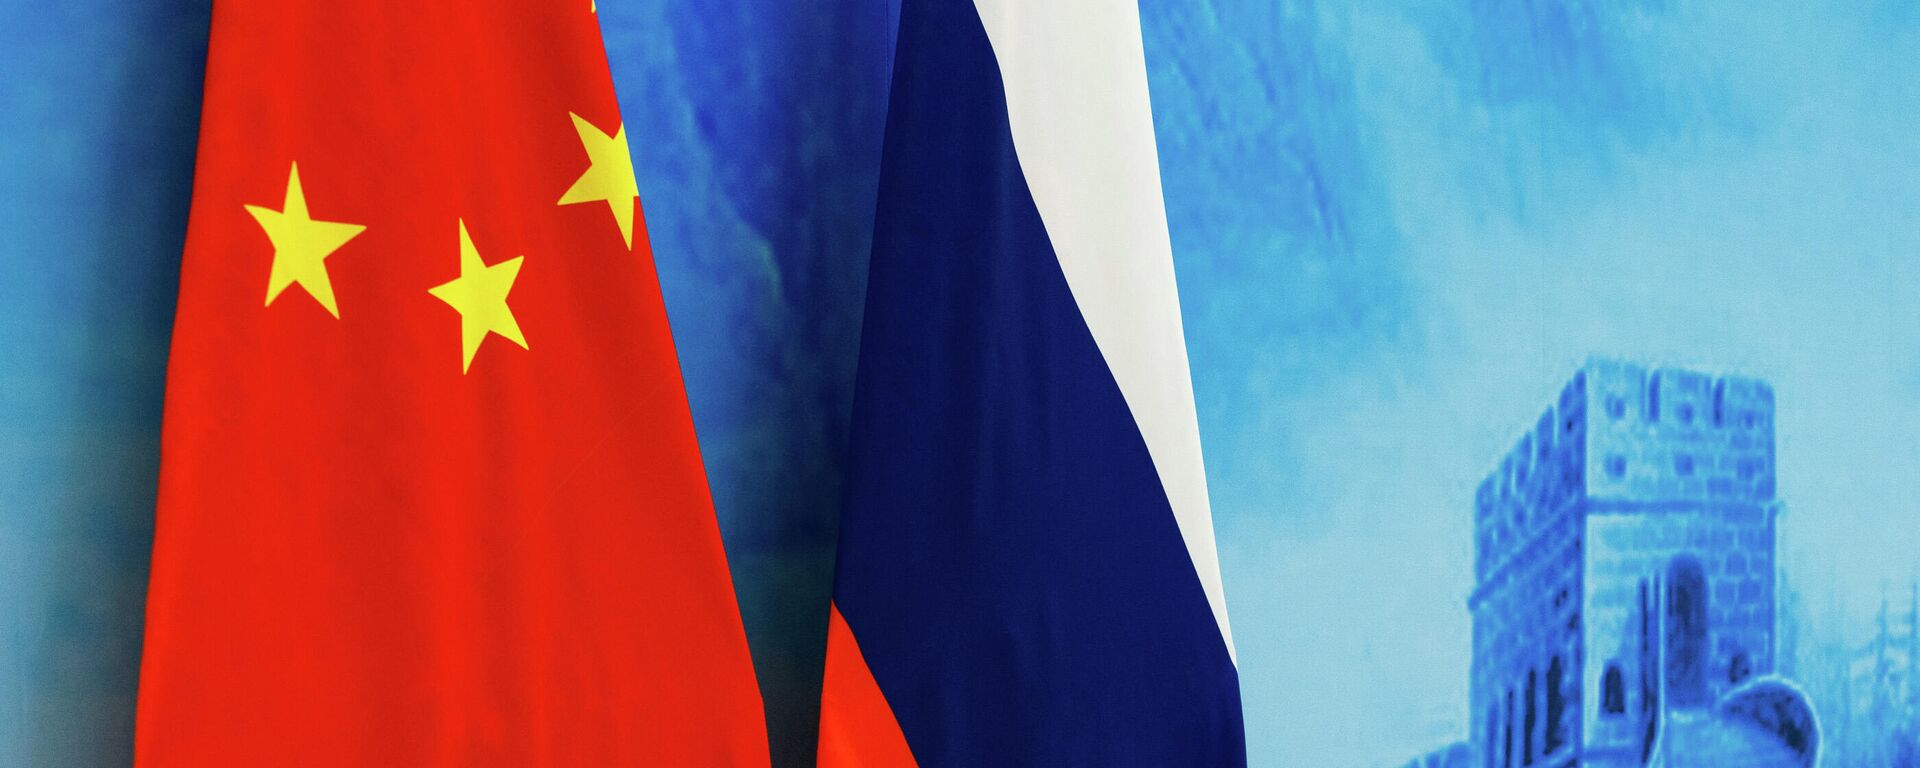 Флаги России и КНР  - Sputnik Армения, 1920, 25.11.2021